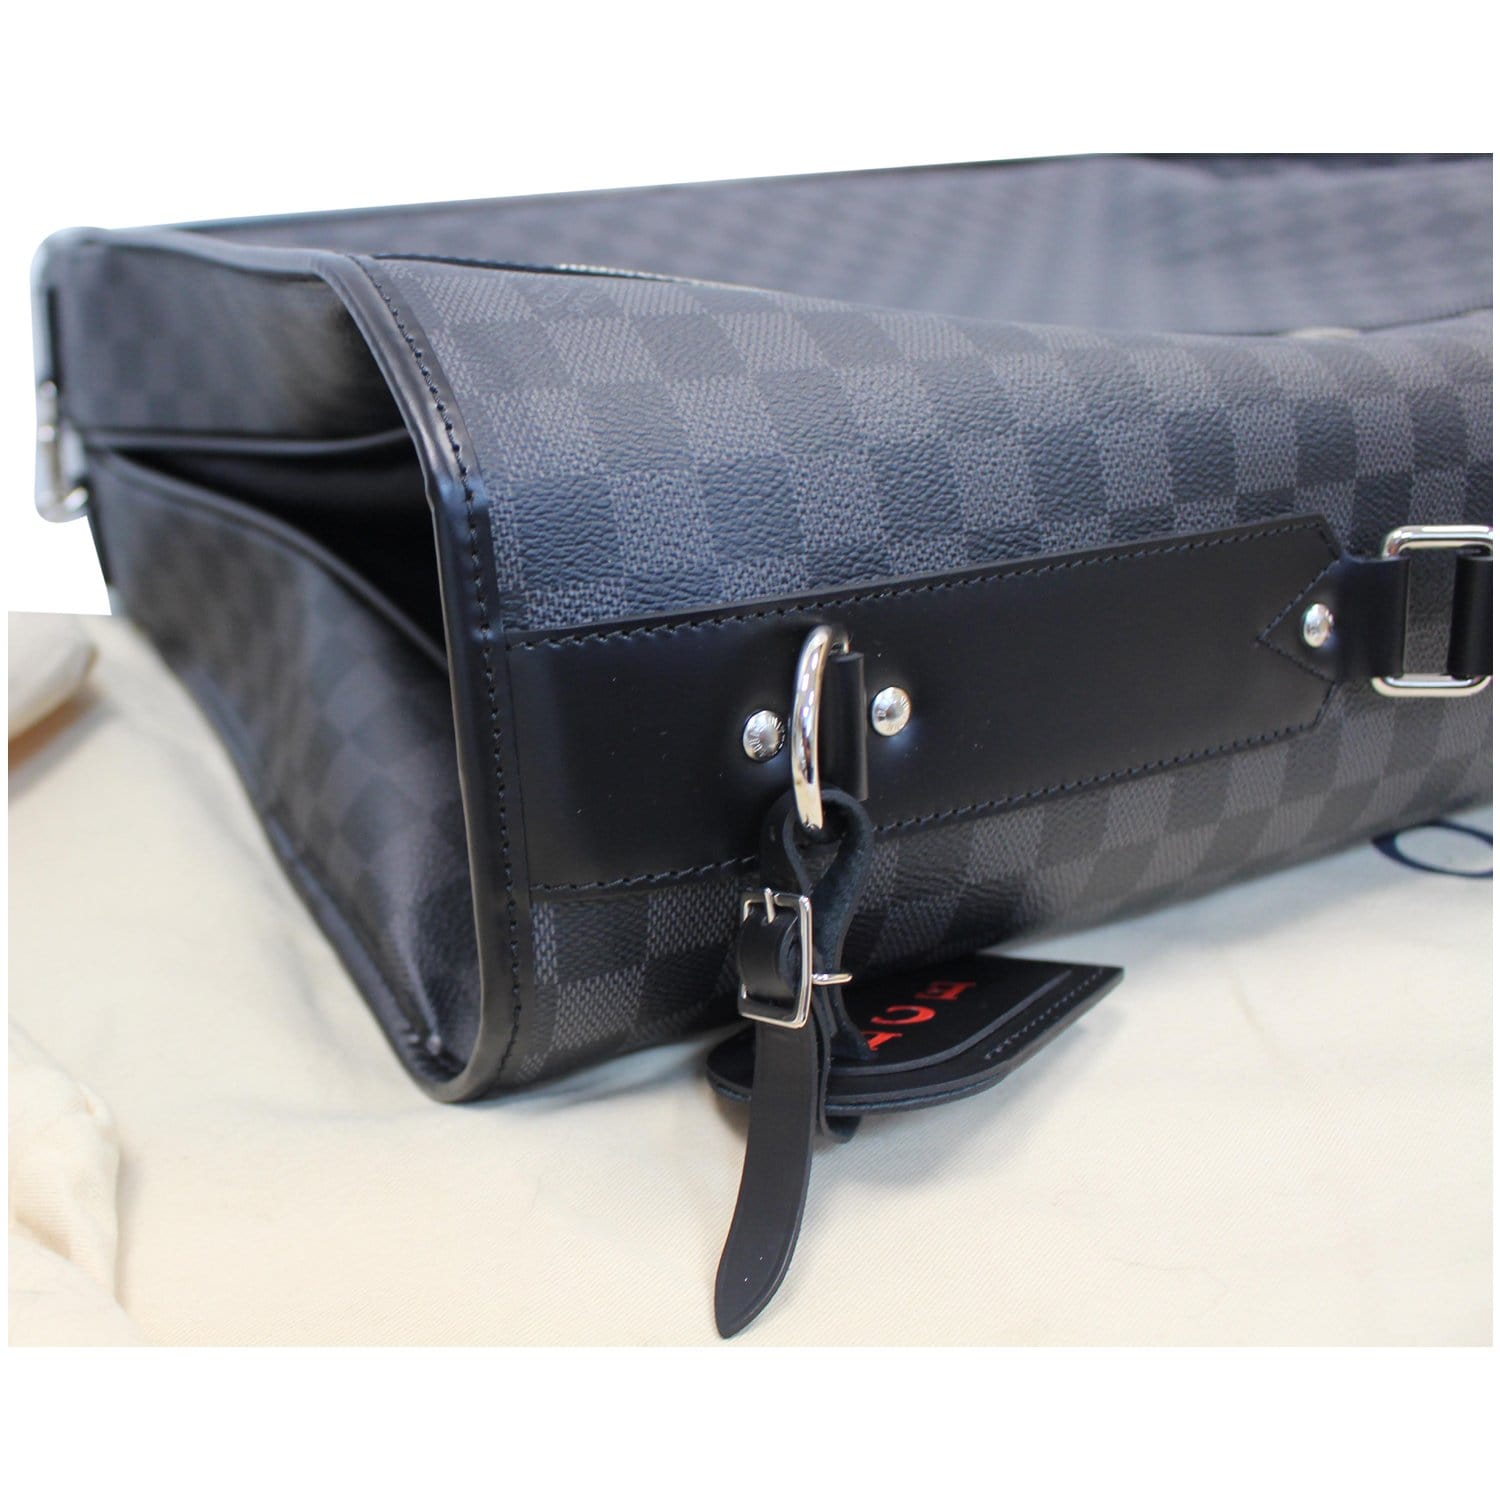 Shop Louis Vuitton DAMIER Garment bag 3 hangers (N41384) by IMPORTfabulous